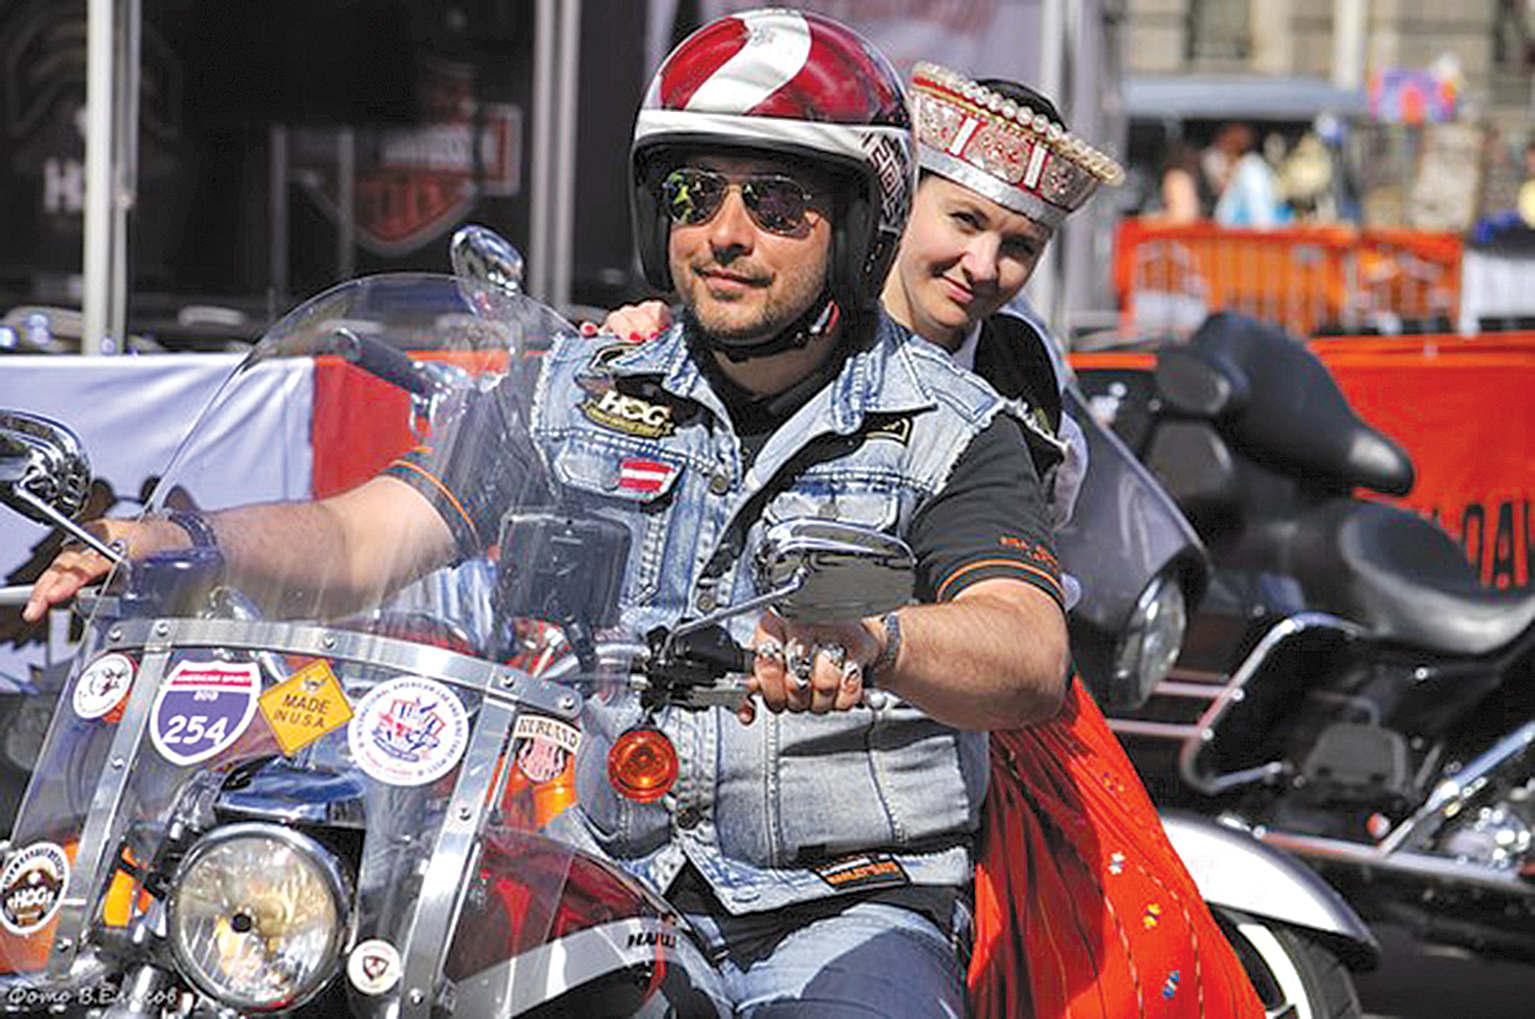 Sanktpēterburgas Harley Davidson starptautiskajā festivālā,  tautumeita no aģentūras Live Riga